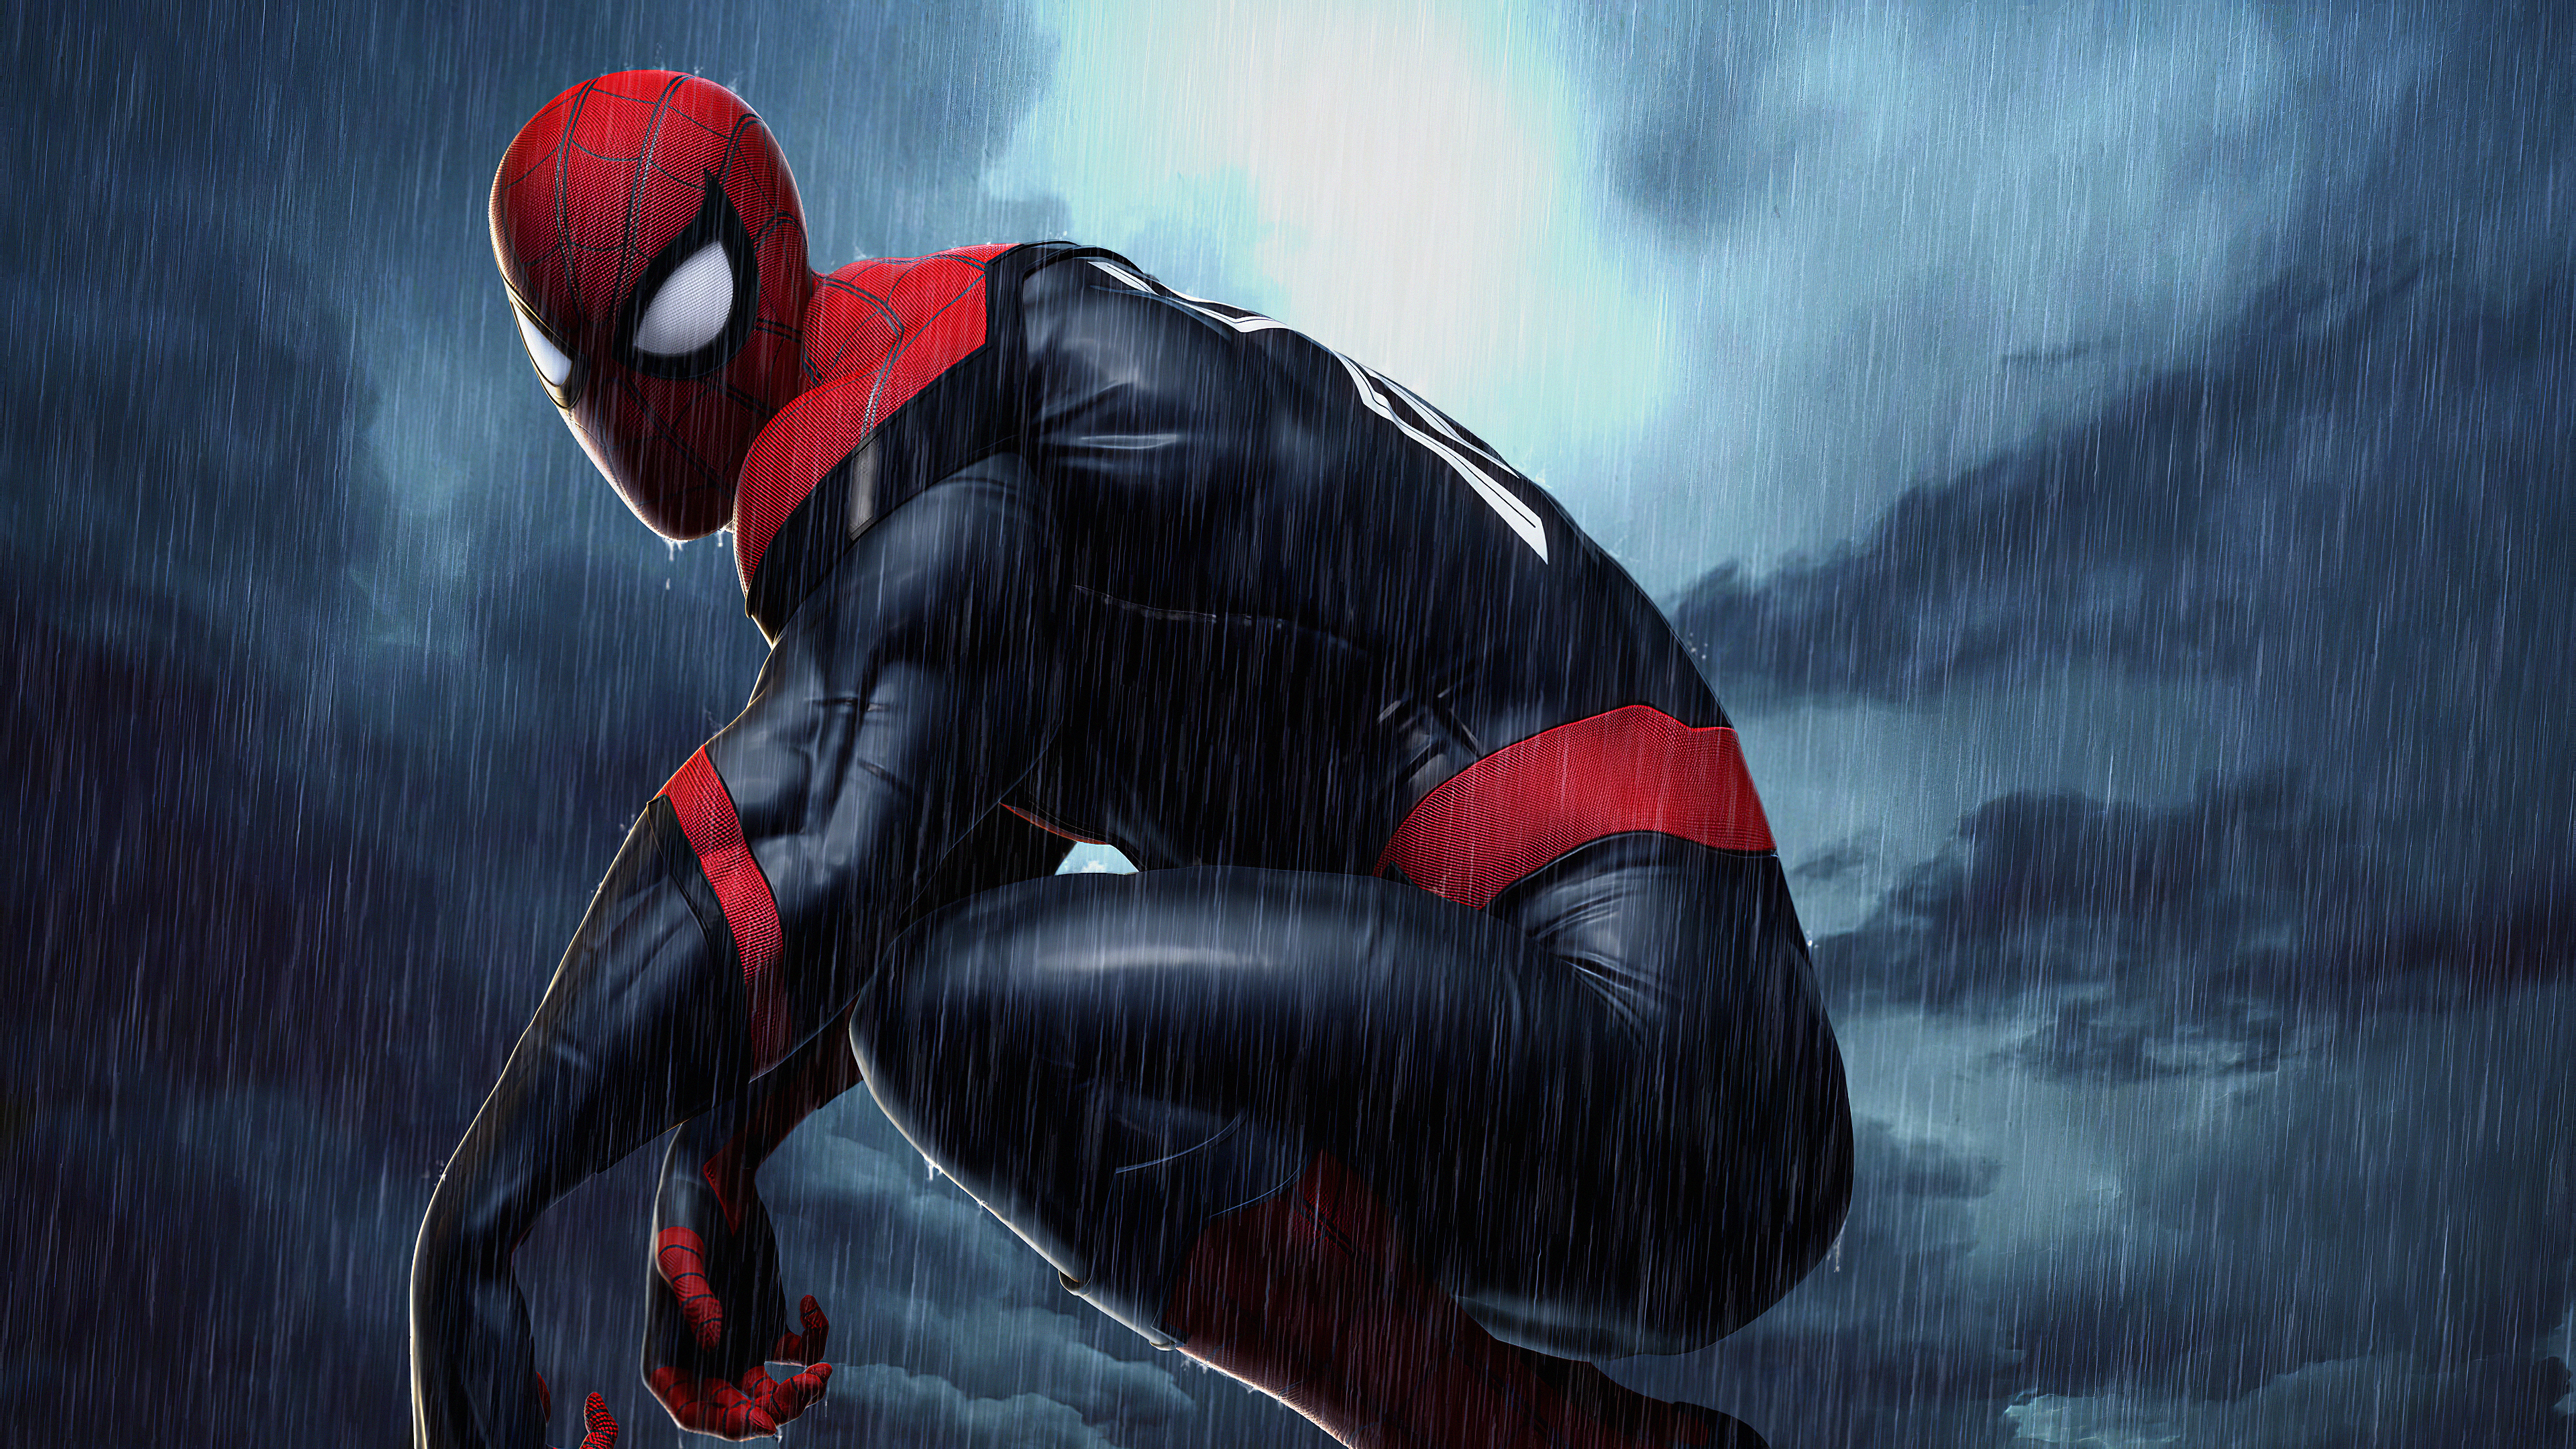 Spiderman 4k Raining, HD Superheroes, 4k Wallpapers, Images ...